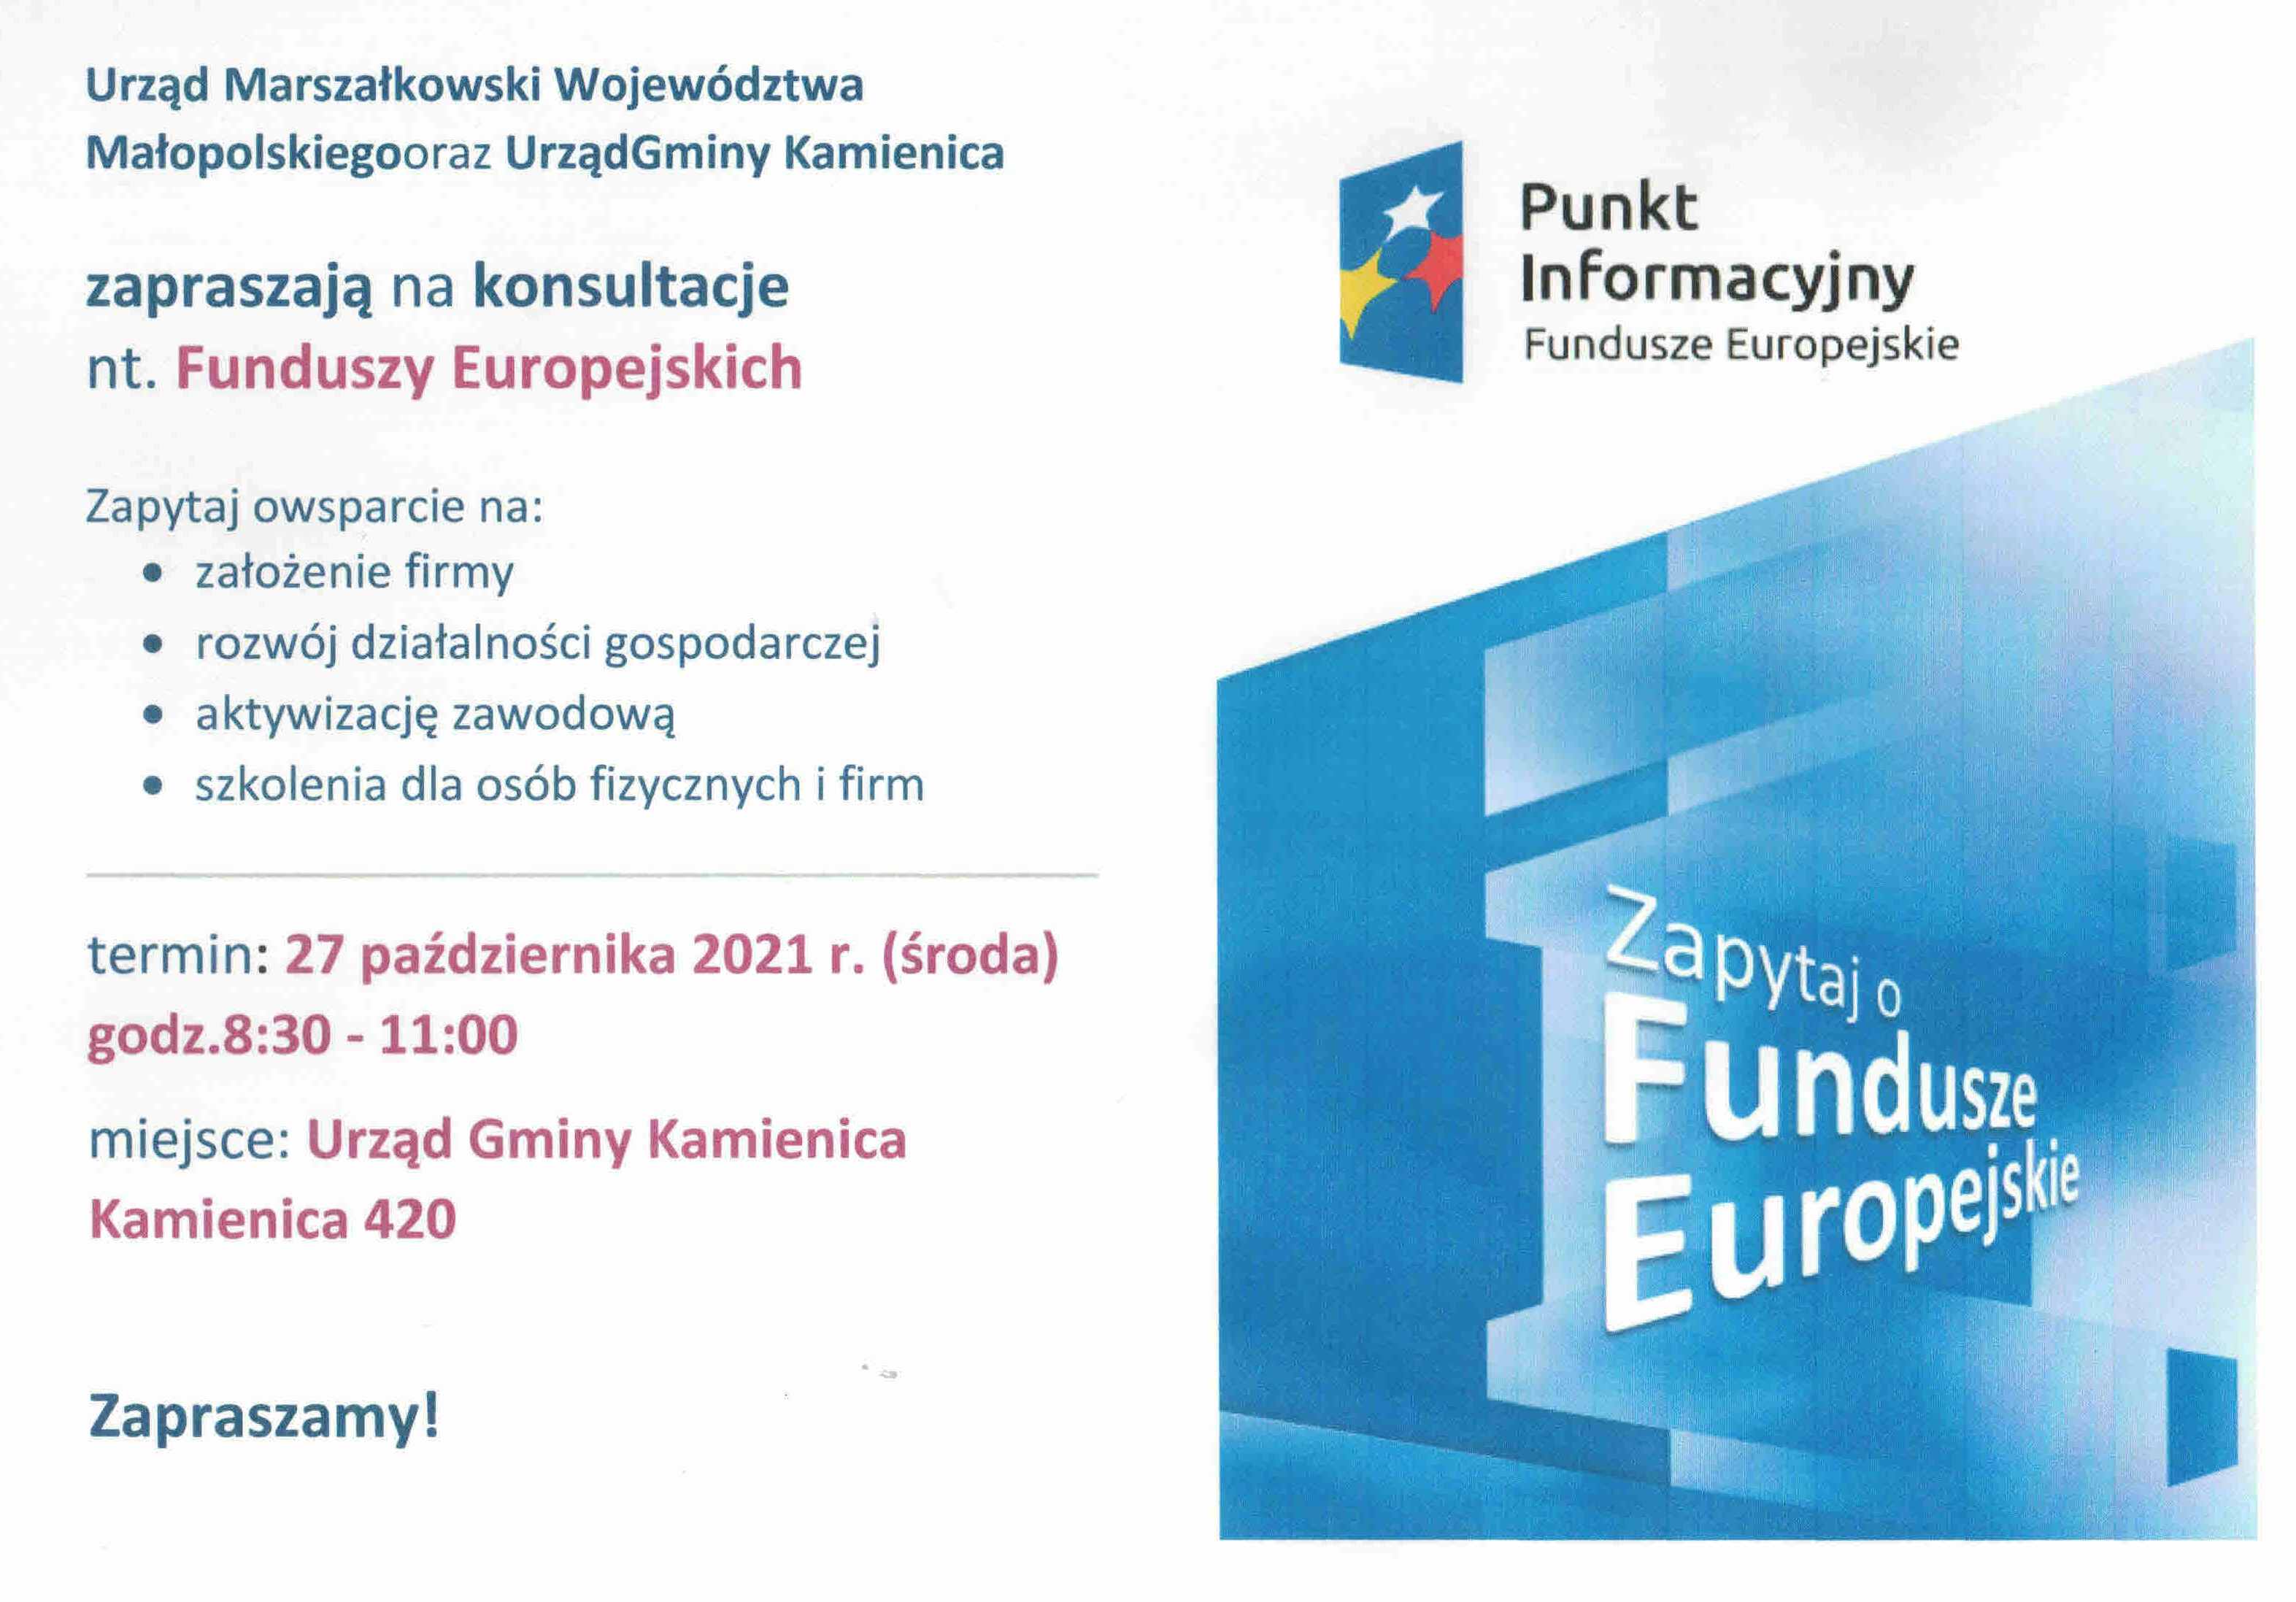 Fundusze Europejskie - punk informacyjny